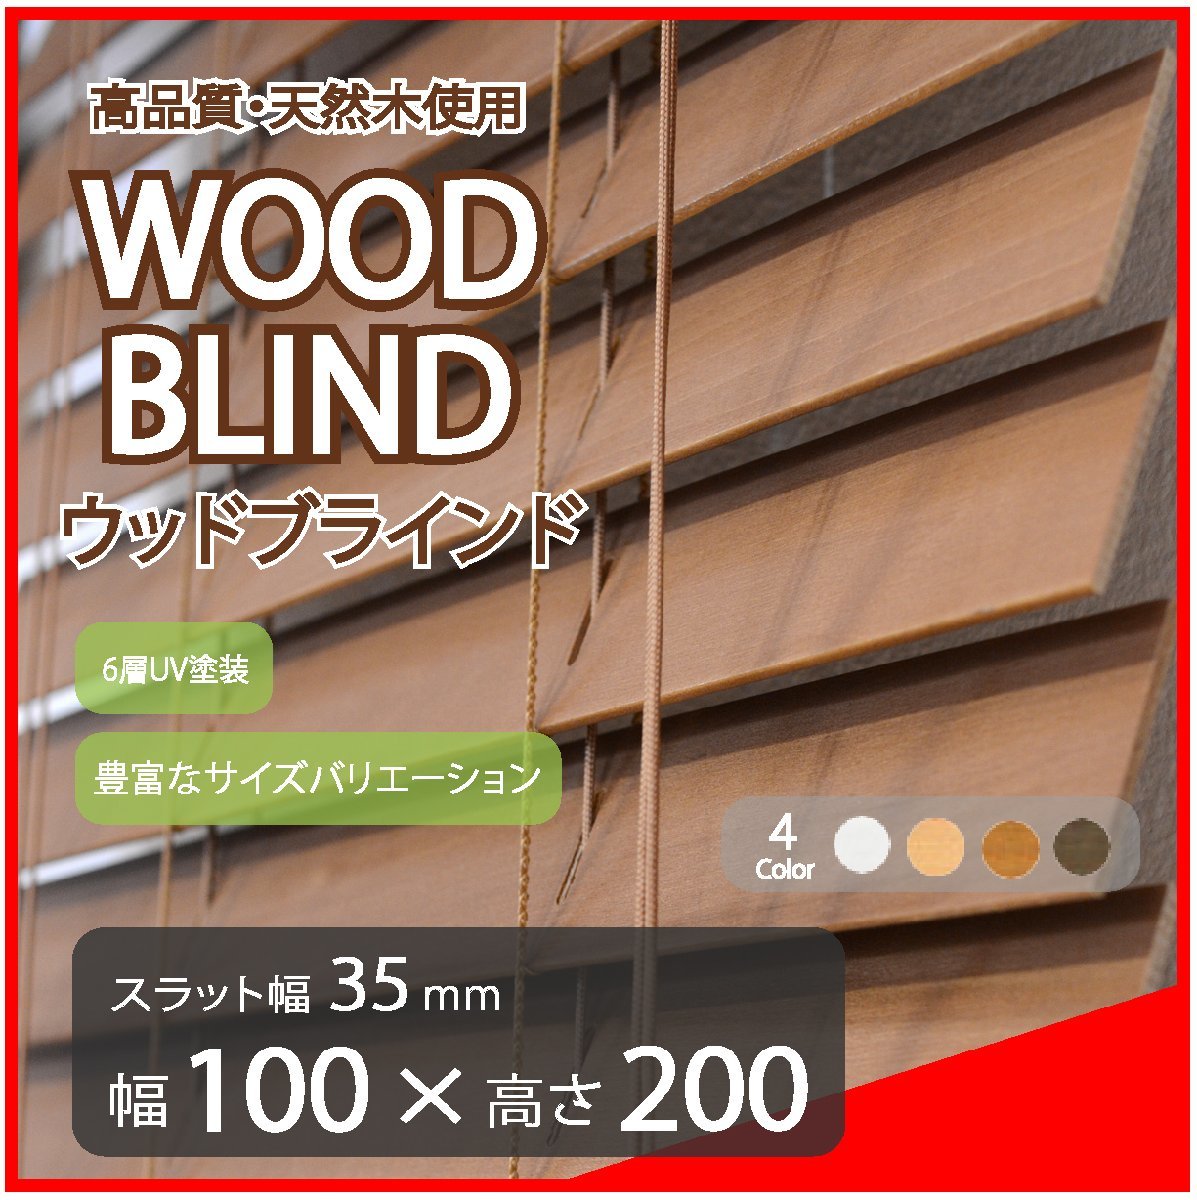 品質は非常に良い ブラインド 木製 ウッドブラインド 高品質 既成サイズ ブラウン 幅100cm×高さ200cm スラット(羽根)幅35mm ブラインド